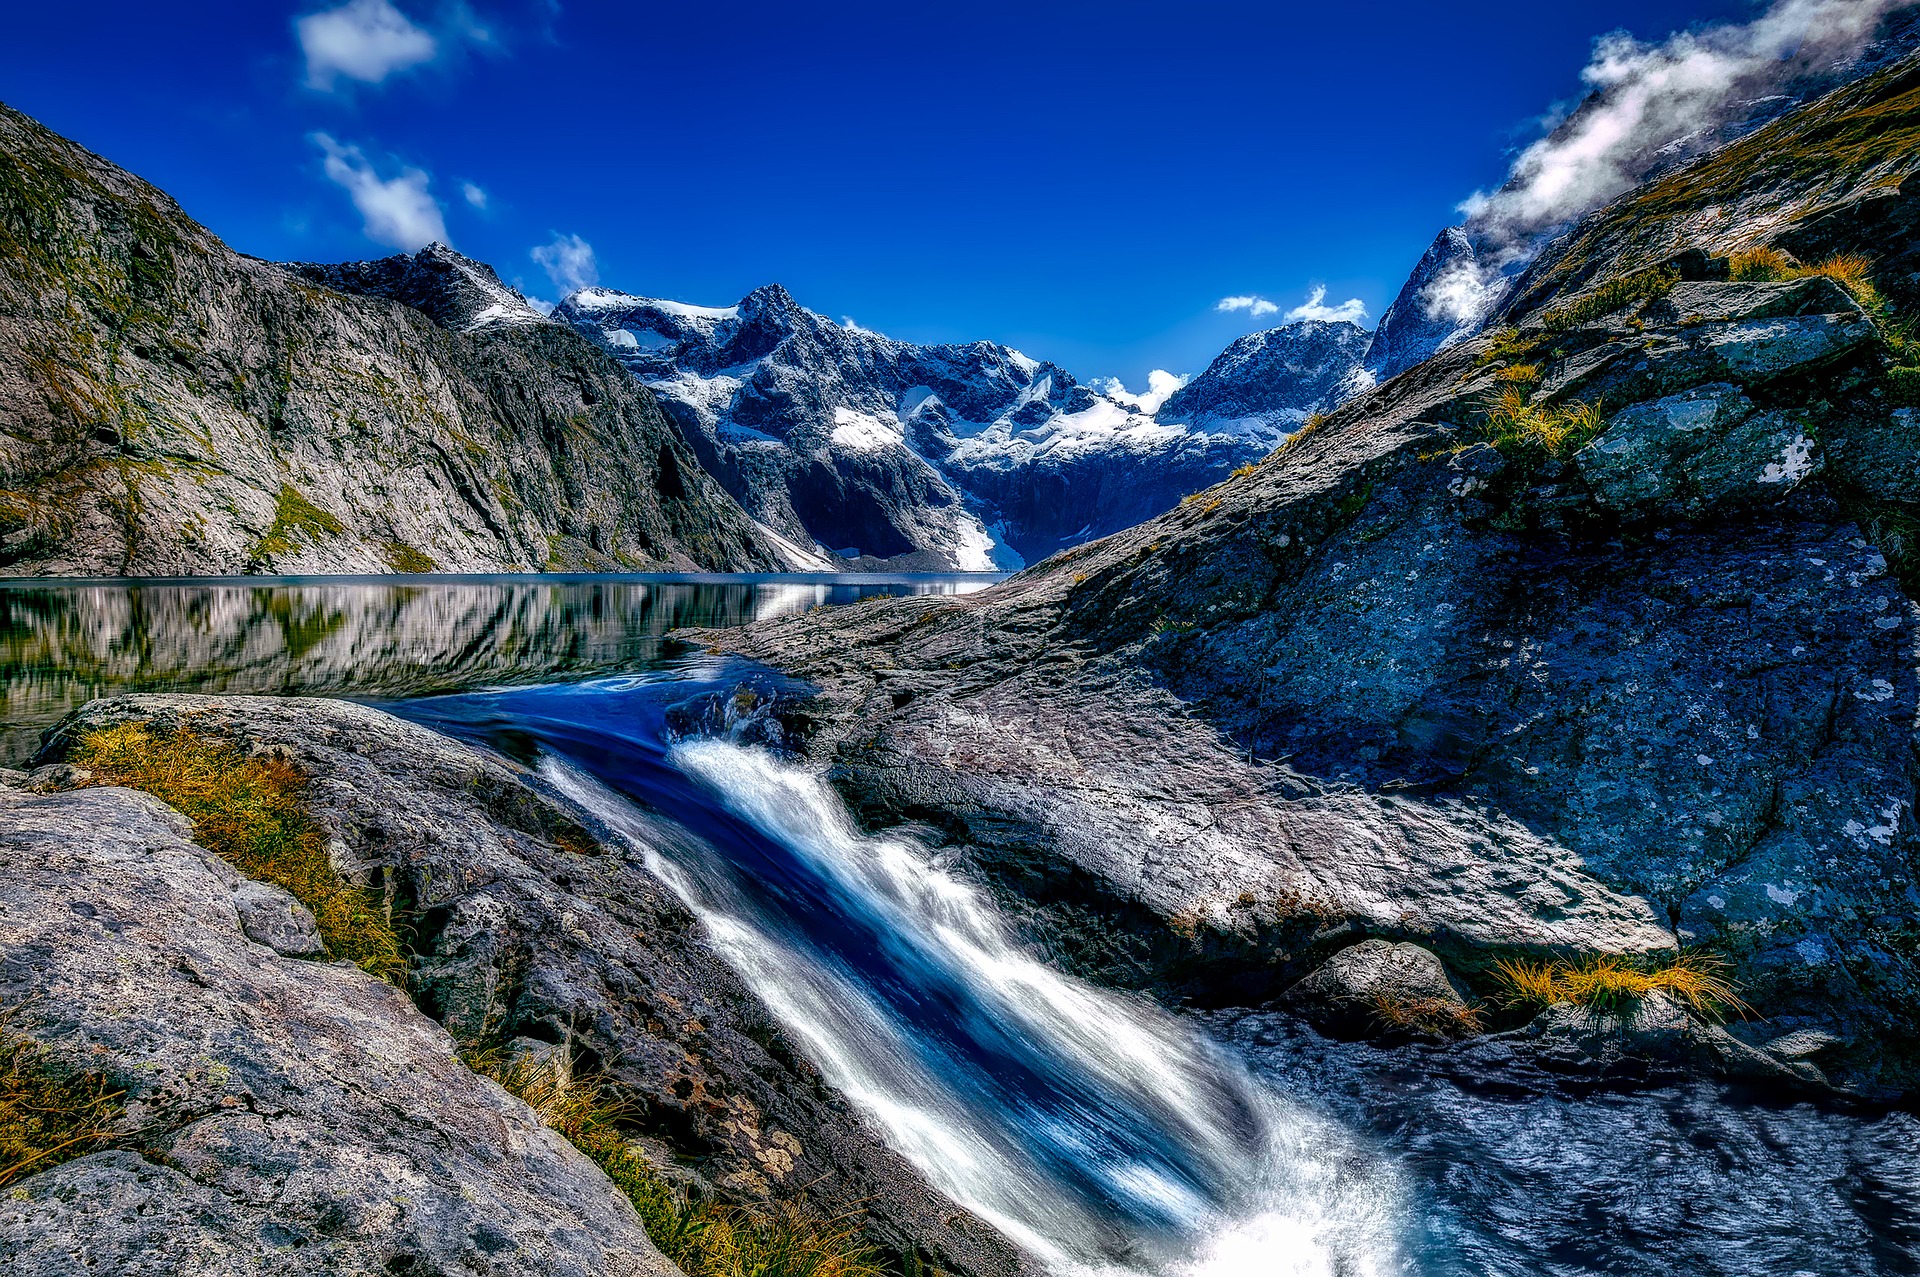 A világ legszebb helyei: Fiordland Nemzeti Park, Új-Zéland